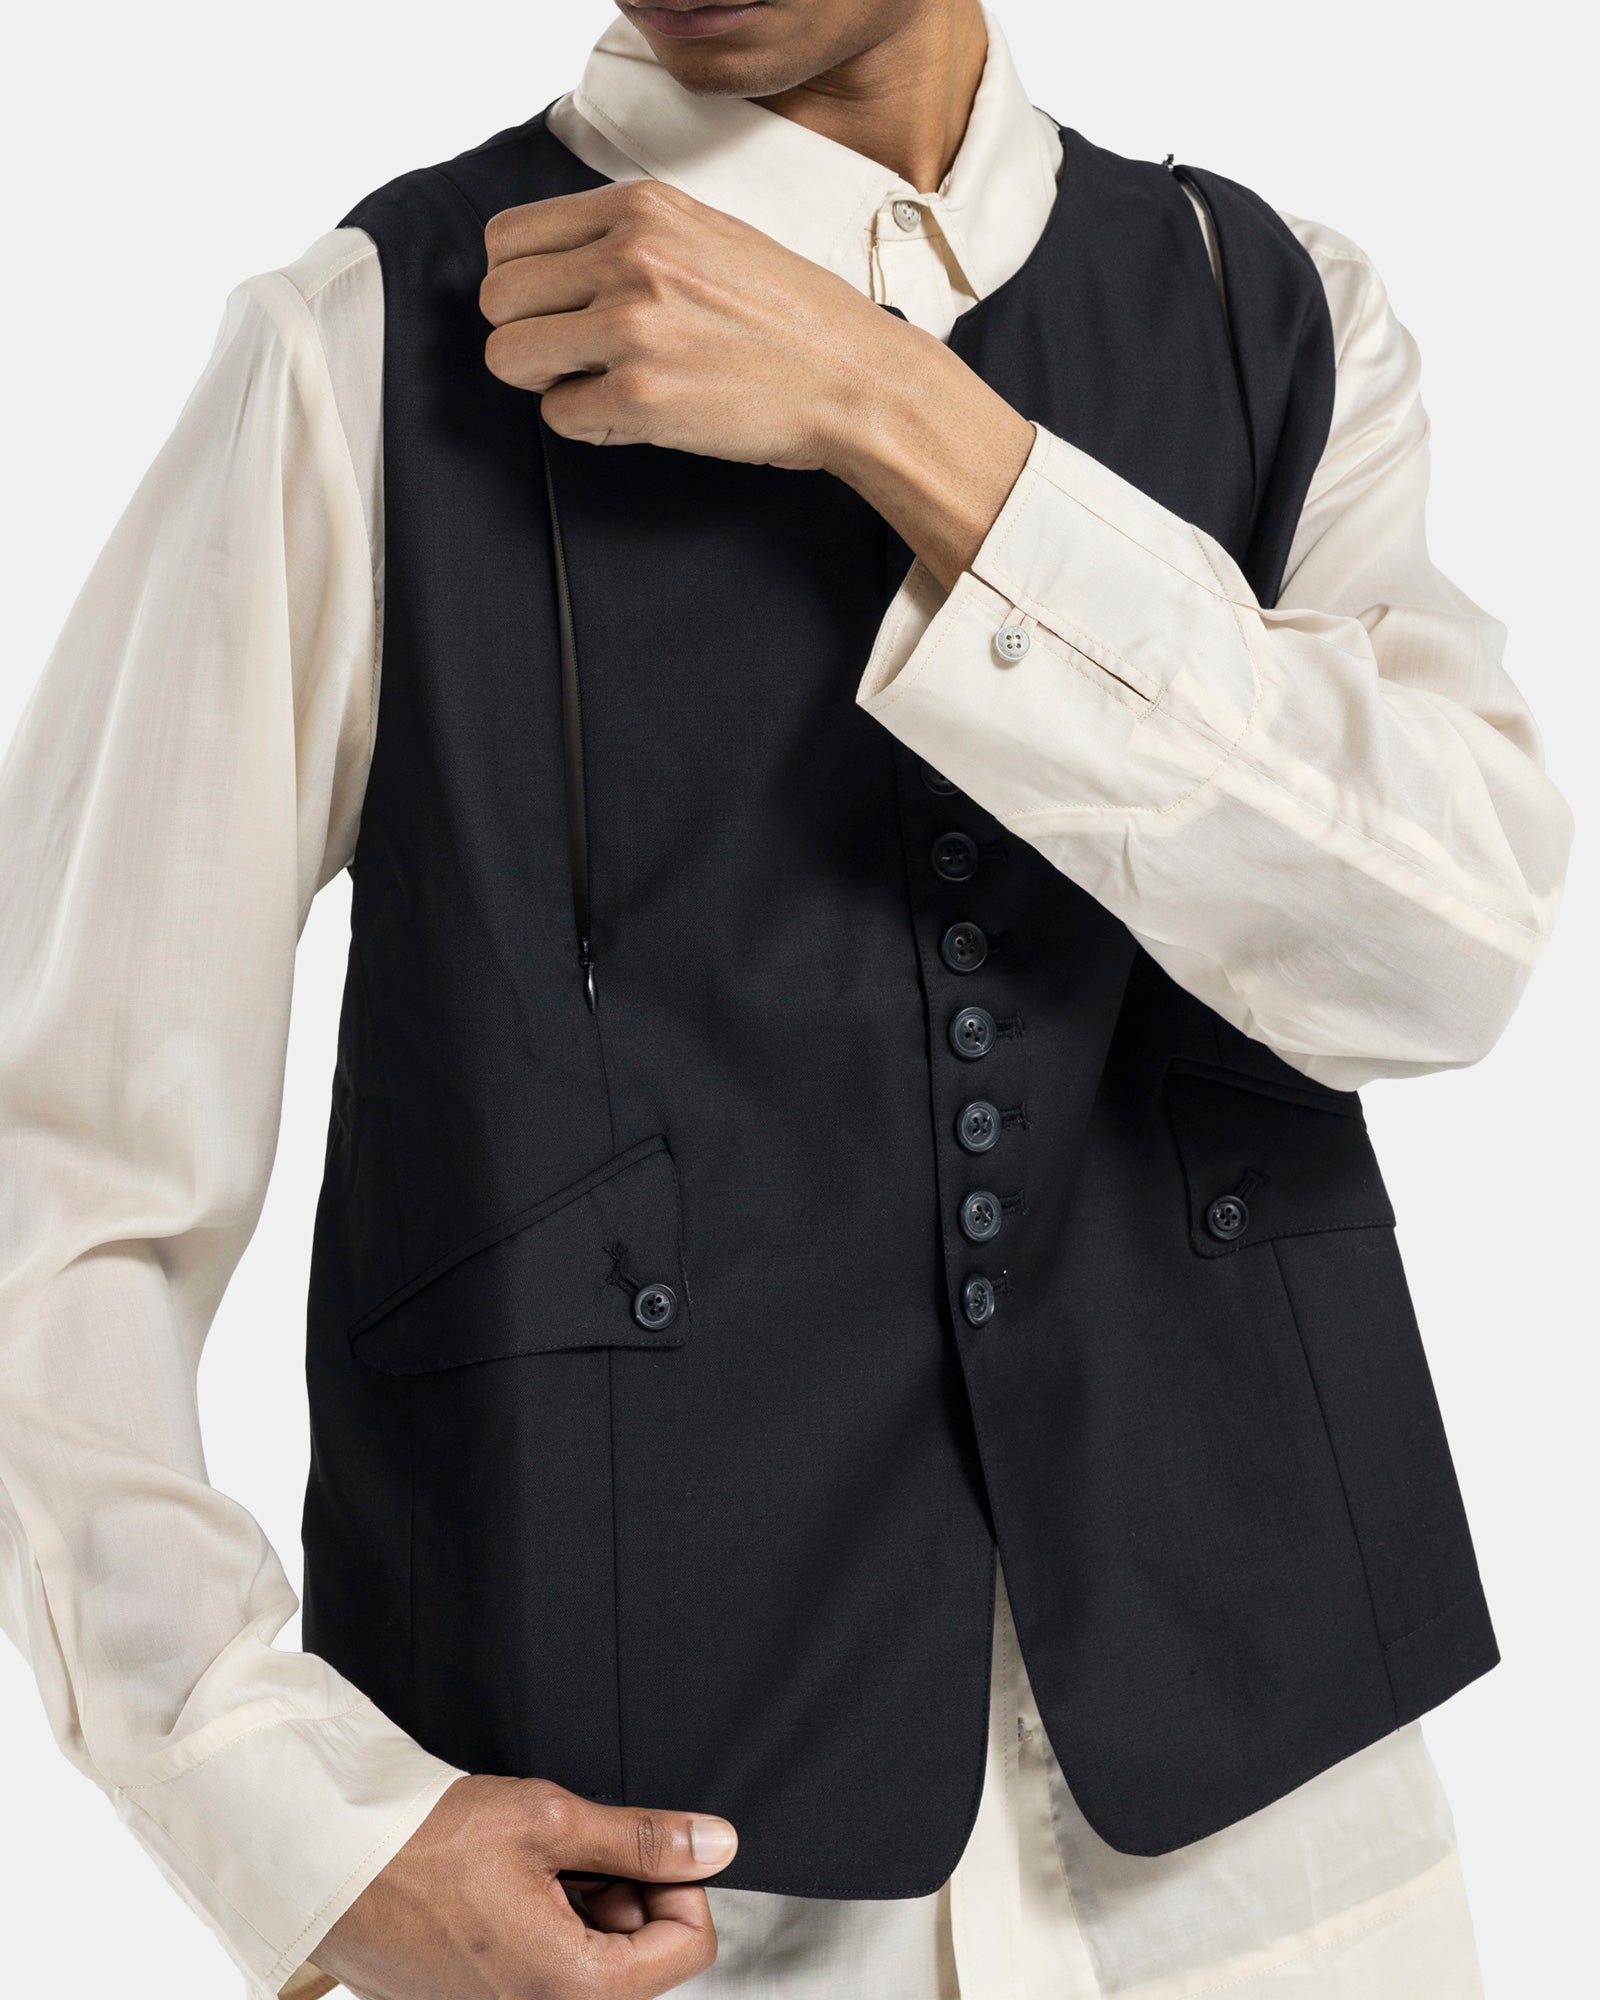 Male model wearing Professor.E black vest on white background